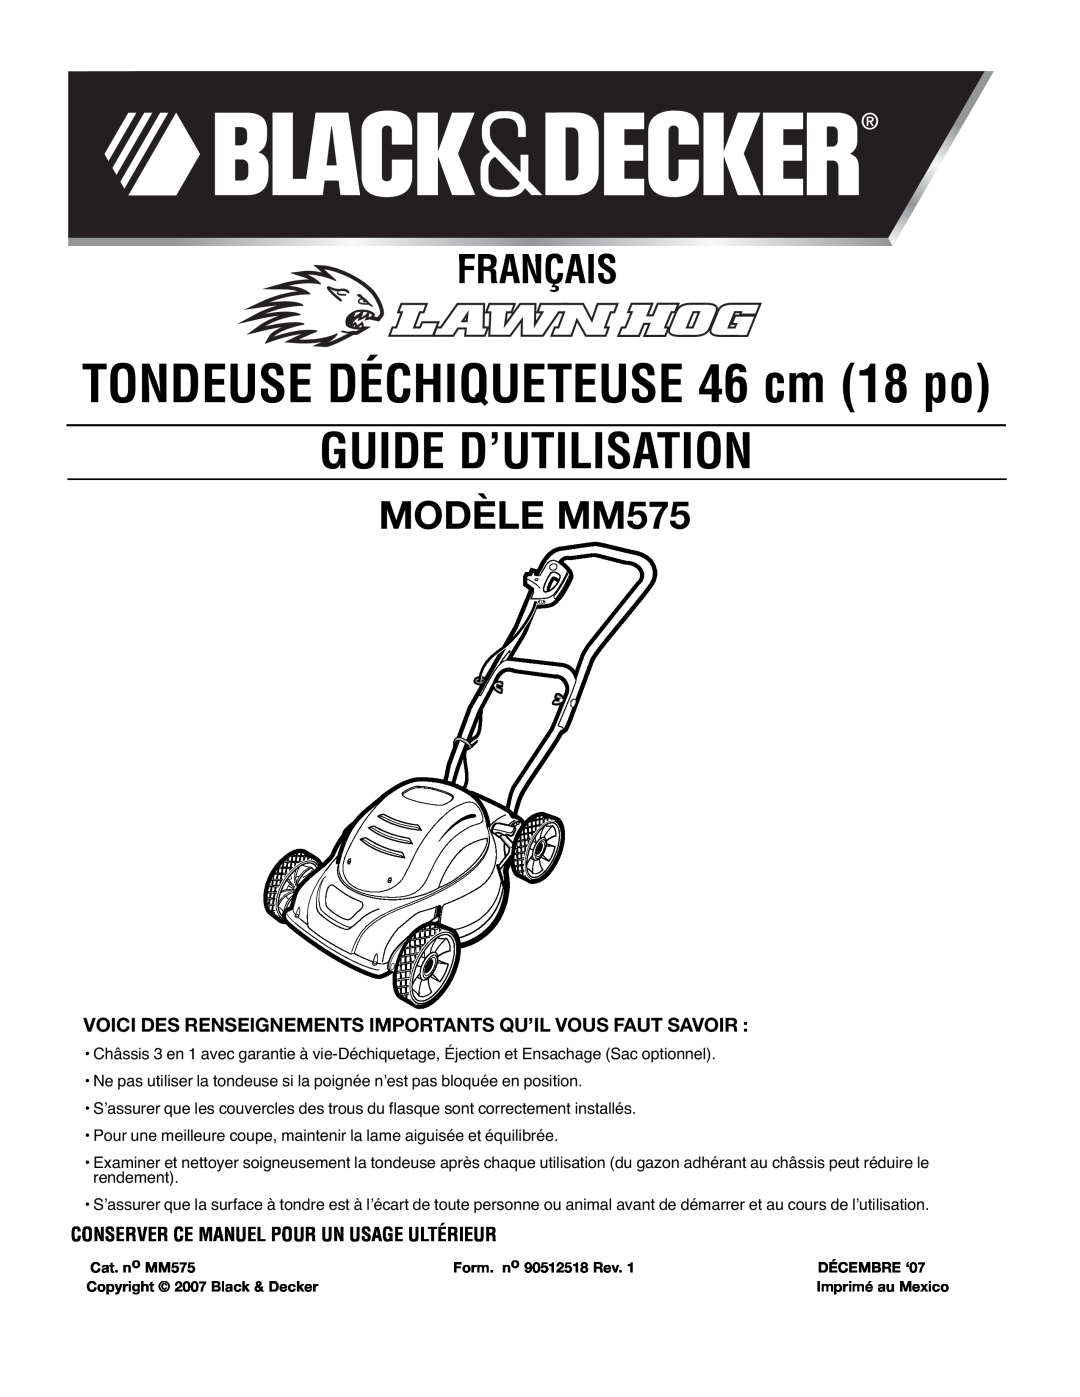 Black & Decker Guide D’Utilisation, Français, MODÈLE MM575, Voici Des Renseignements Importants Qu’Il Vous Faut Savoir 